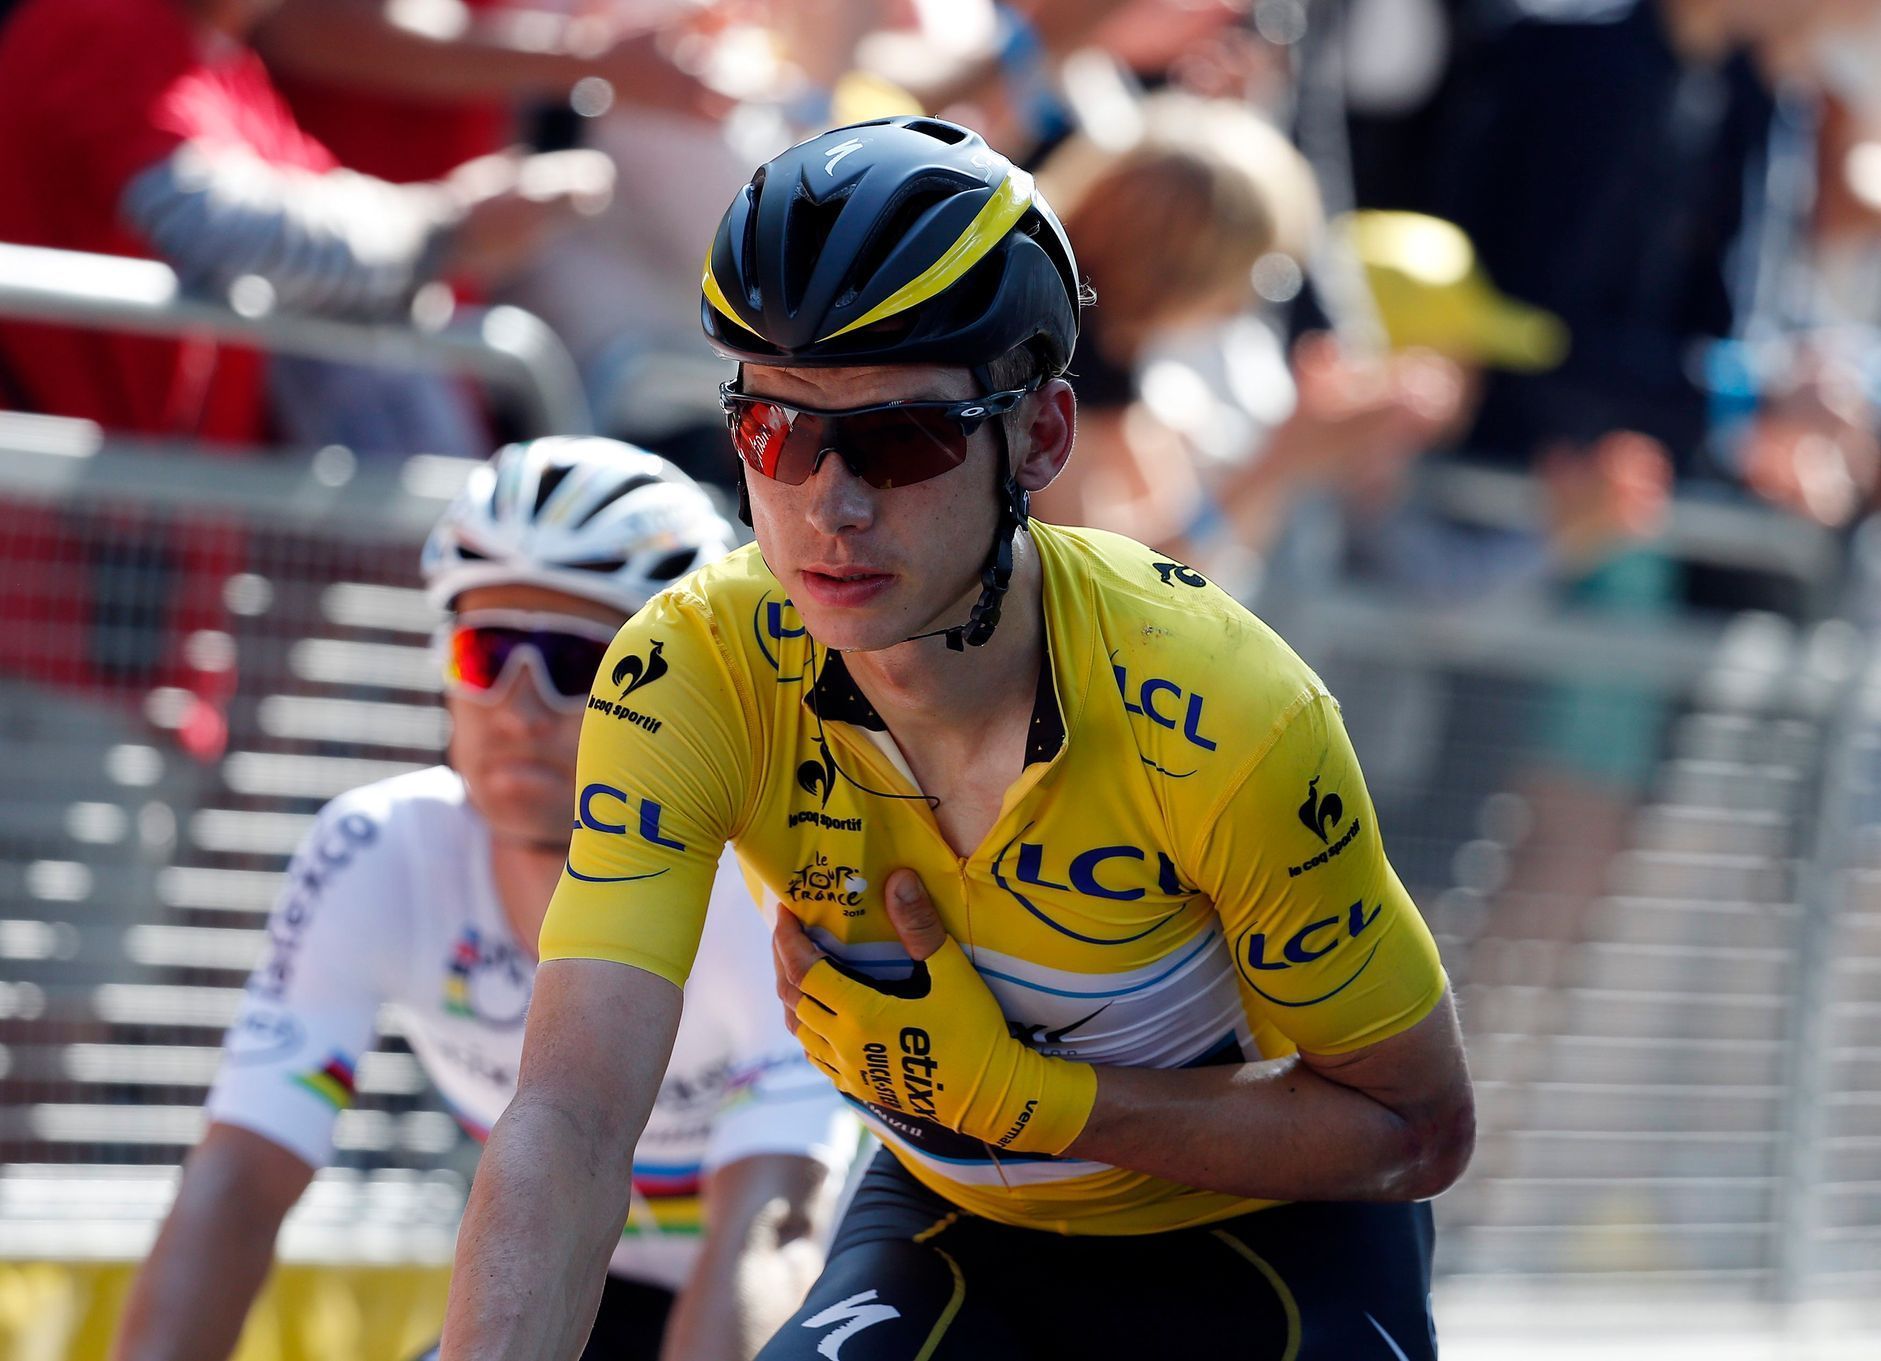 Tour de France 2015, 6. etapa: Tony Martin